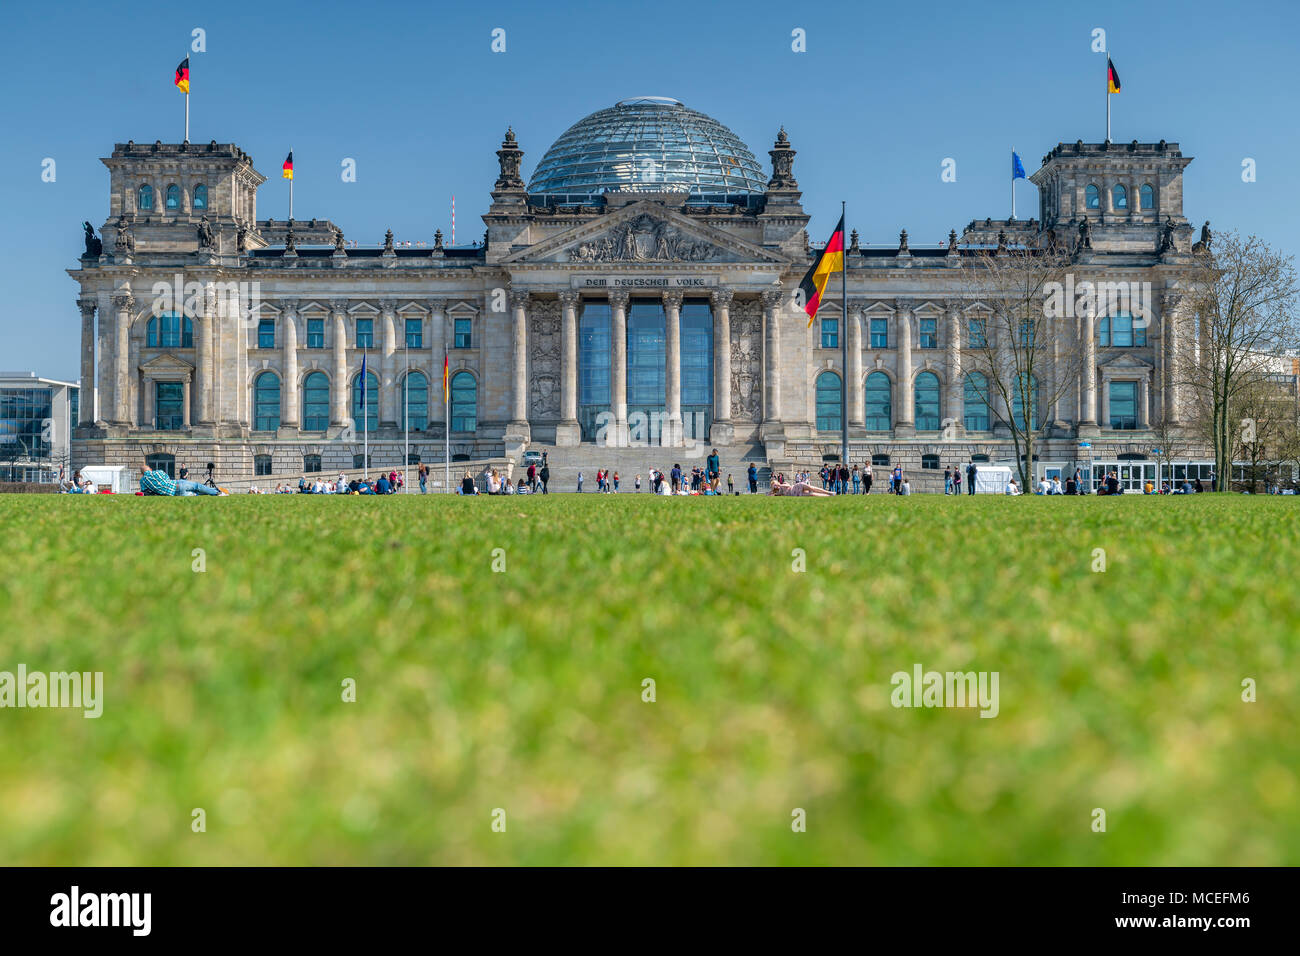 Stark im Zweiten Weltkrieg schwer beschädigt, wurde der Reichstag nach der Wiedervereinigung Deutschlands restauriert und beherbergt heute im Bundestag. Stockfoto